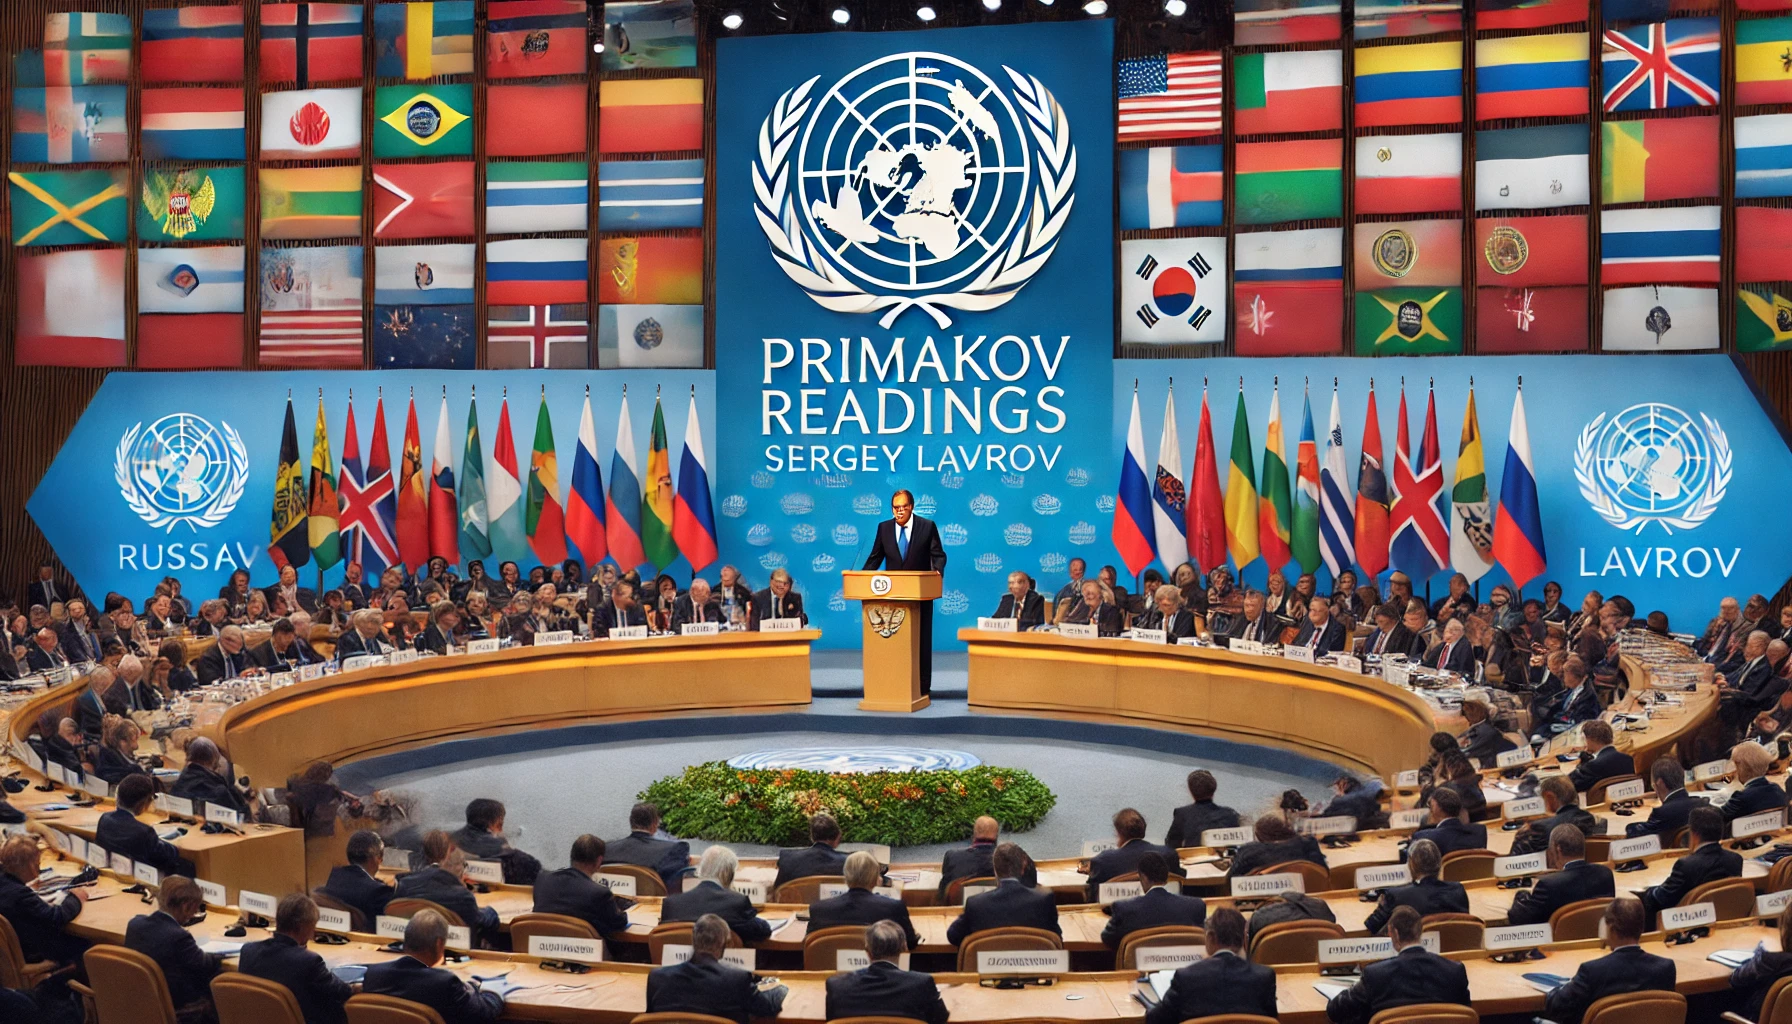 Wizja globalnych relacji Sergieja Ławrowa